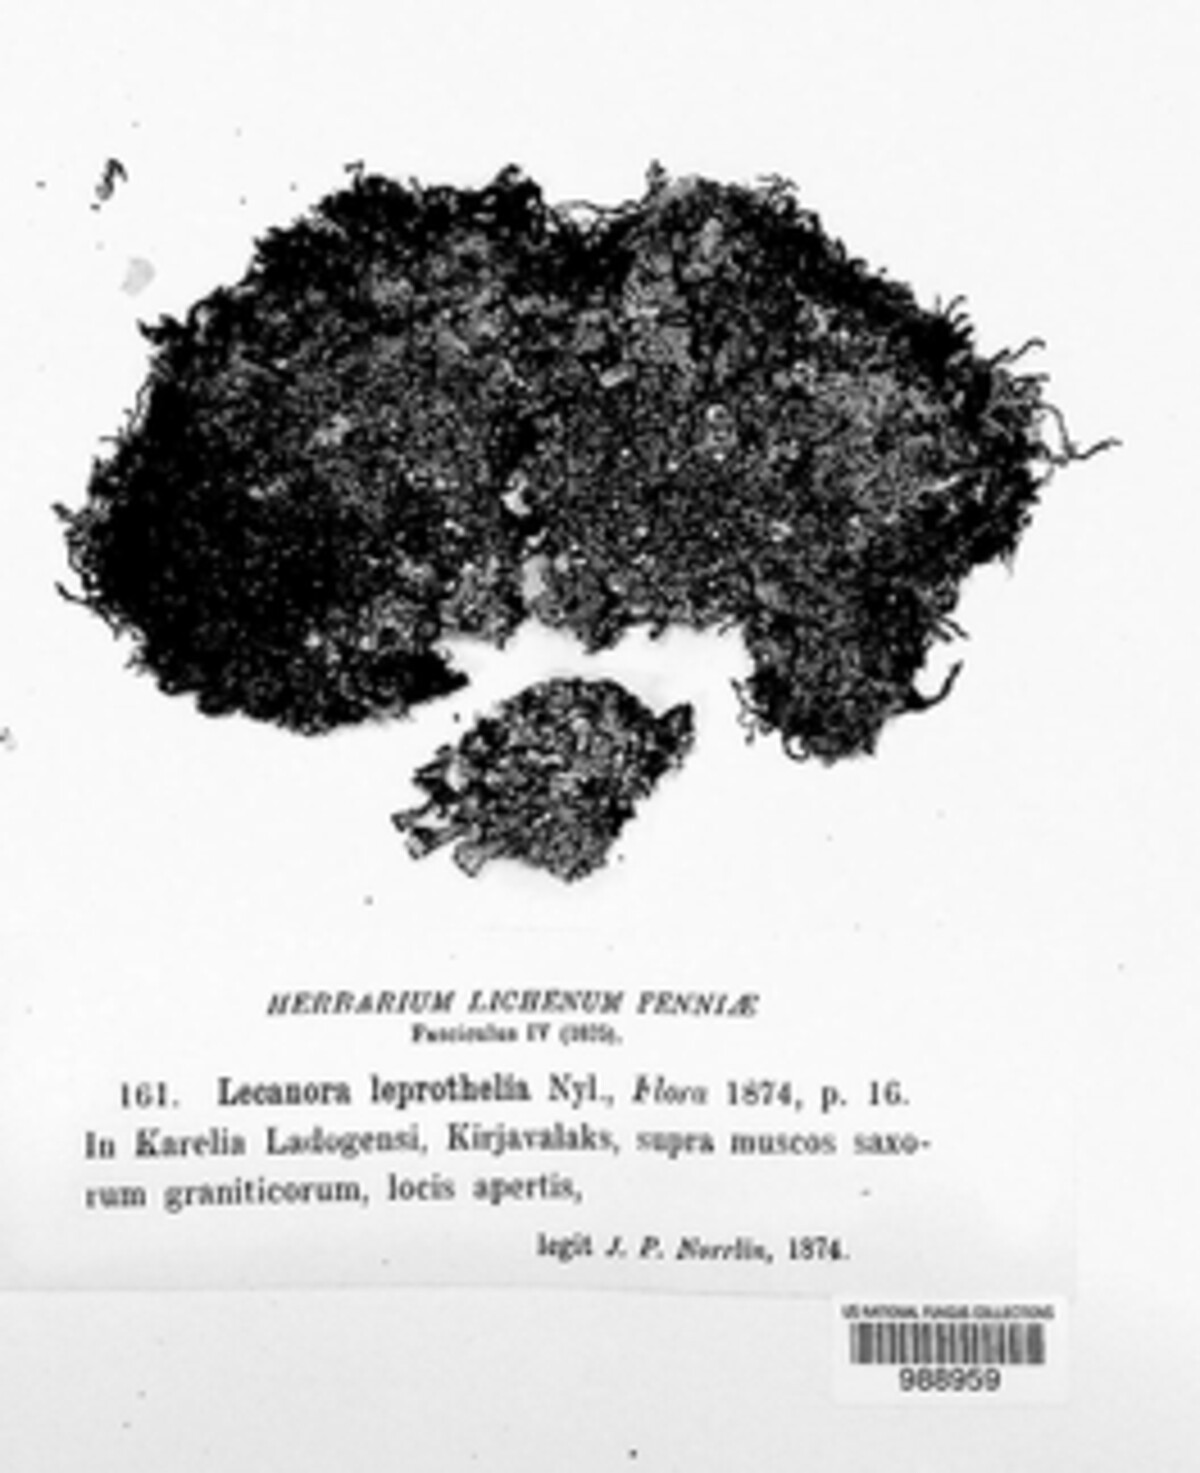 Lecanora leprothelia image